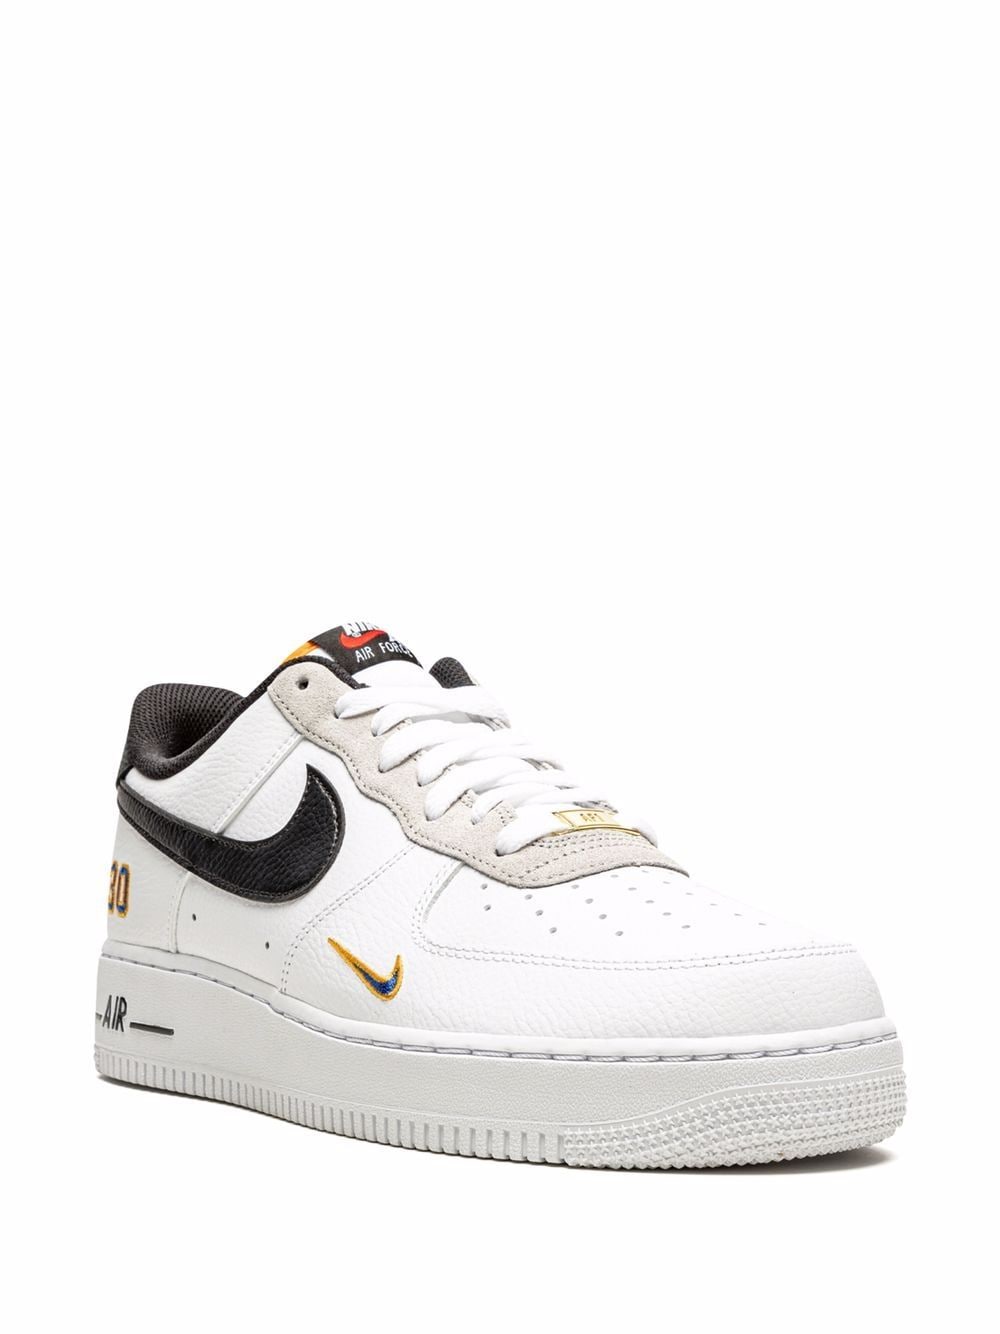 Nike Air Force 1 '07 LV8 "Ken Griffey Sneakers -